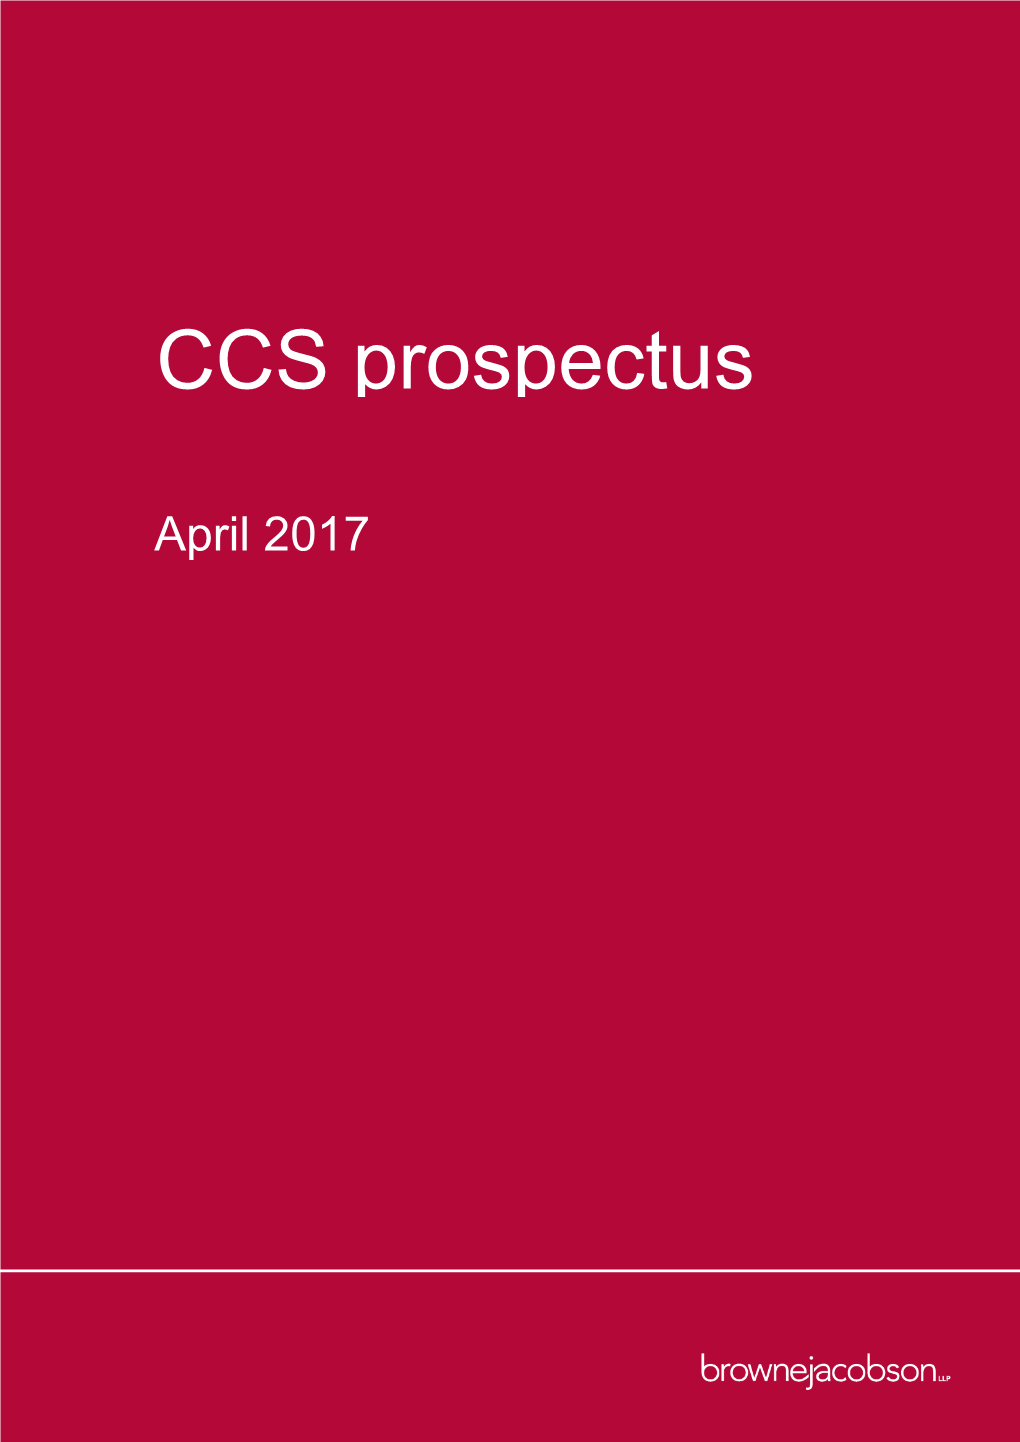 CCS Prospectus